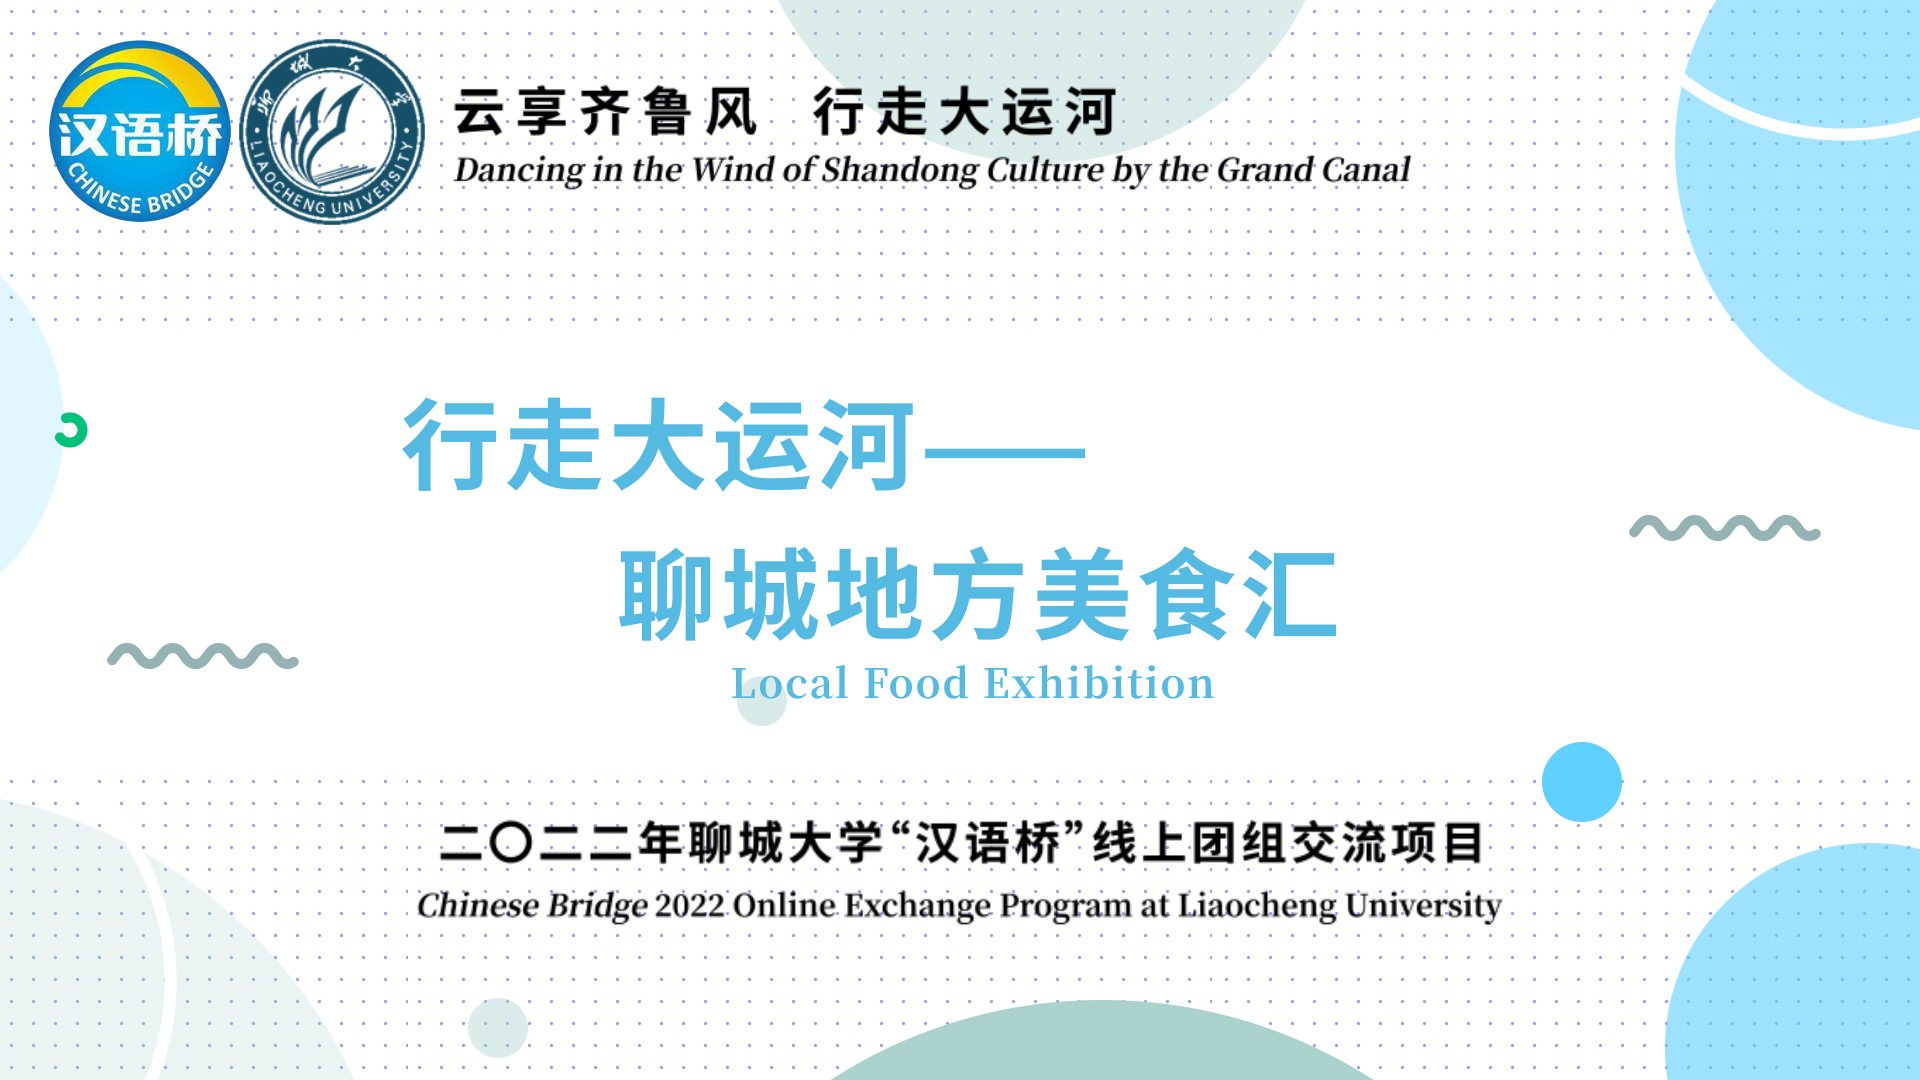 Local Food Exhibition